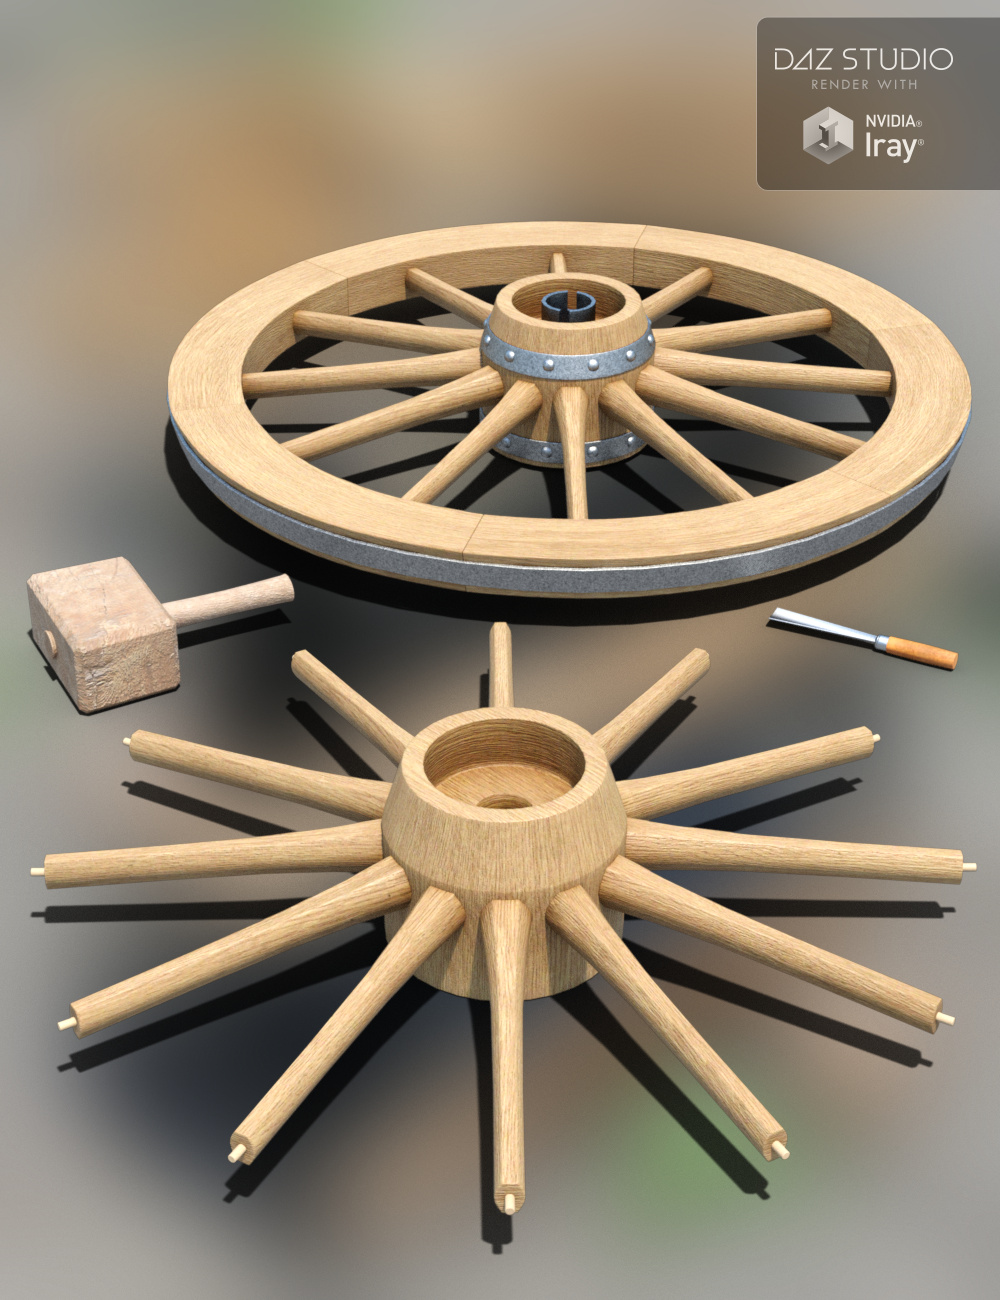 Wheelwrights Workshop by: Merlin Studios, 3D Models by Daz 3D